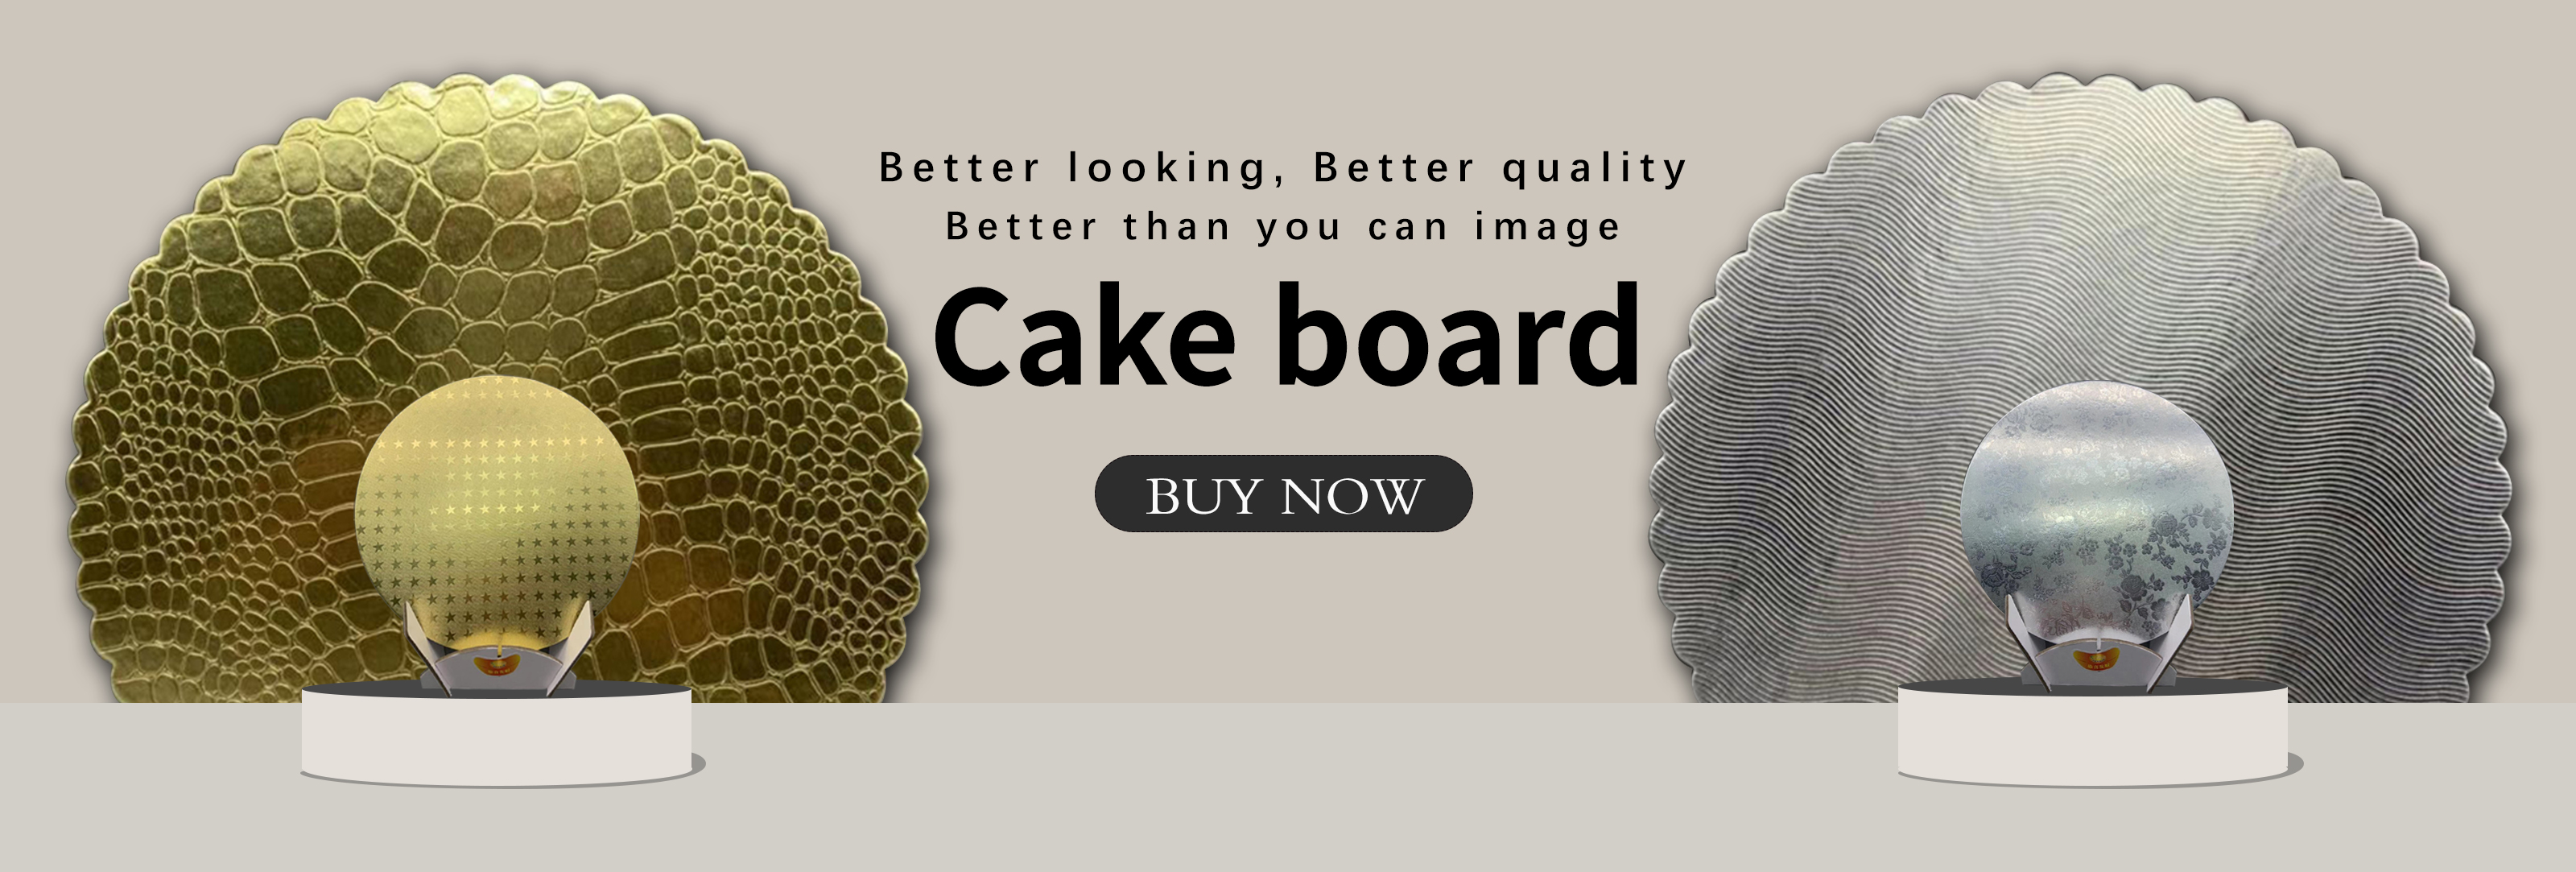 cake board nga base sa cake